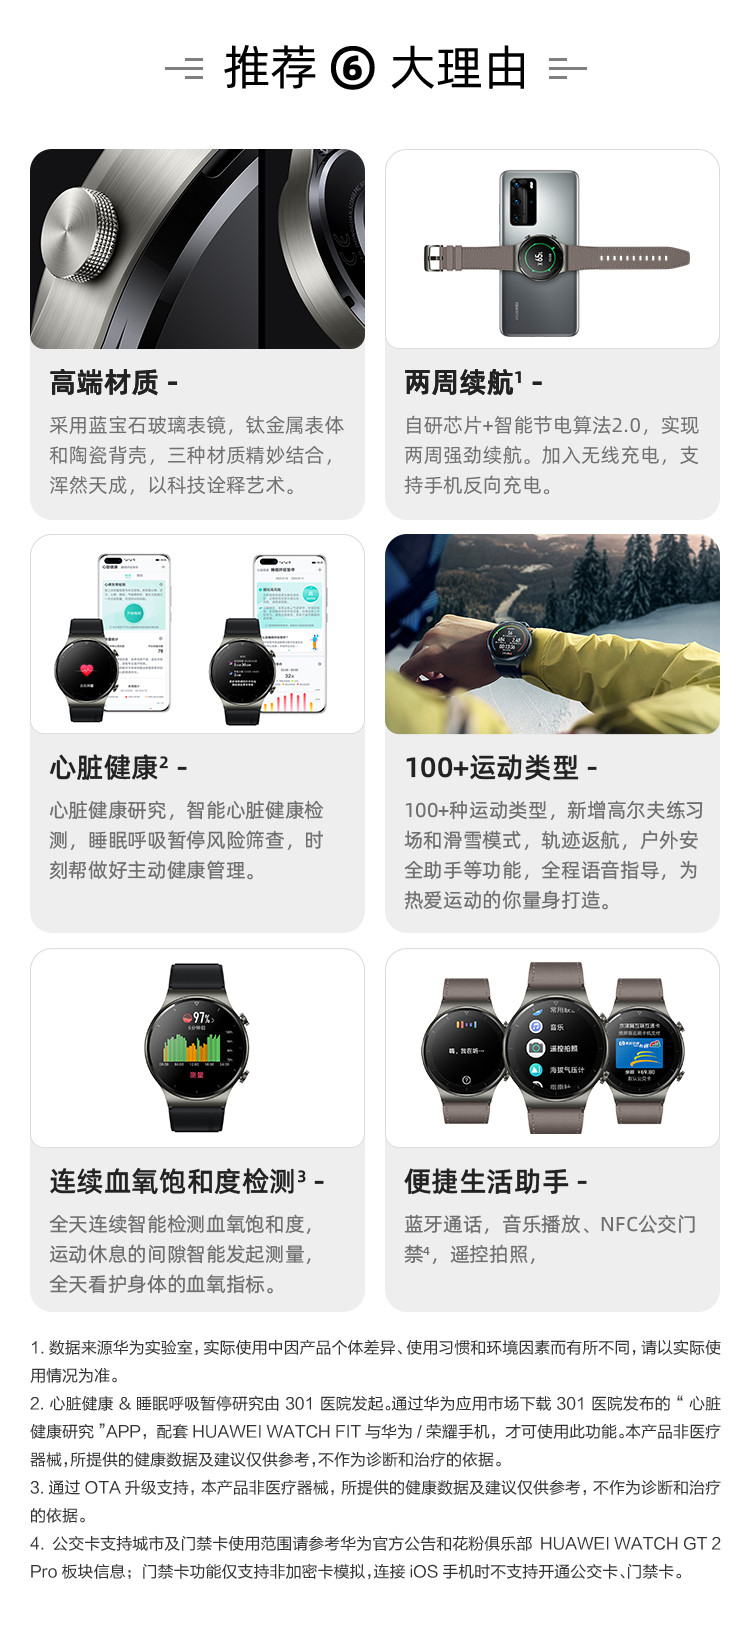 华为/HUAWEI WATCH GT 2 Pro 华为手表 运动智能手表 两周续航/蓝牙通话/蓝宝石镜面 46mm